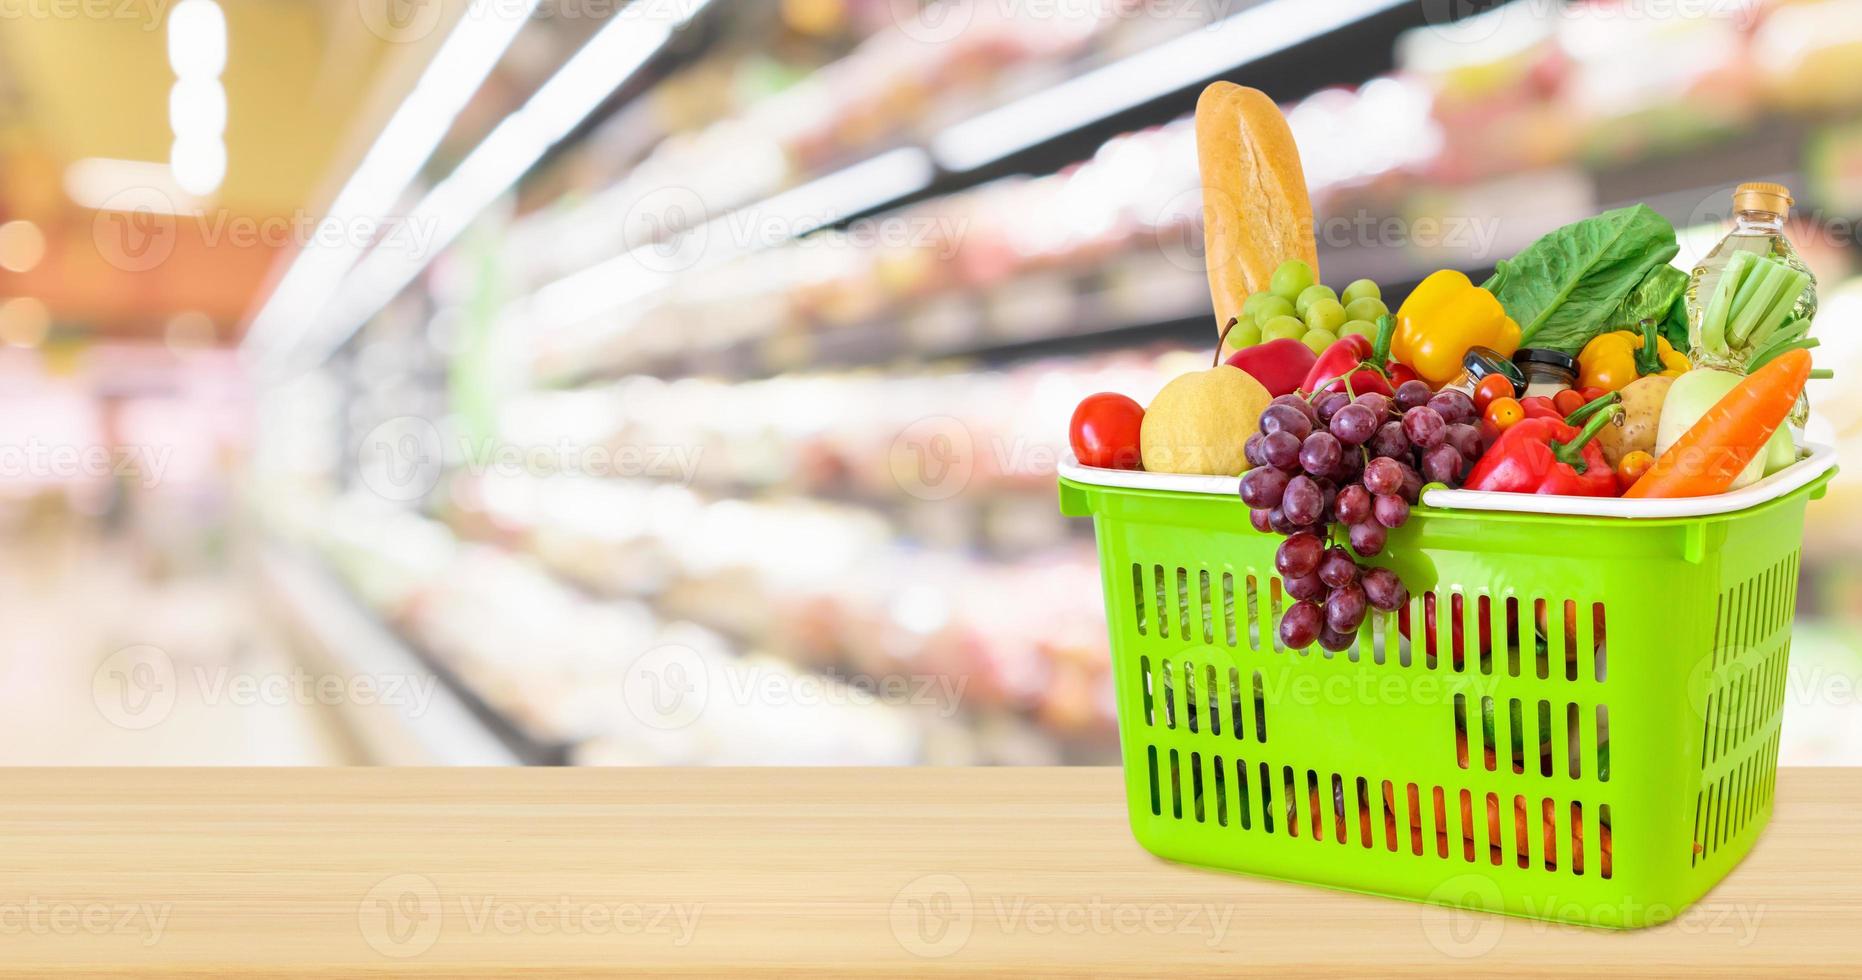 varukorg fylld med frukt och grönsaker på träbord med supermarket livsmedelsbutik suddig oskarp bakgrund med bokeh ljus foto